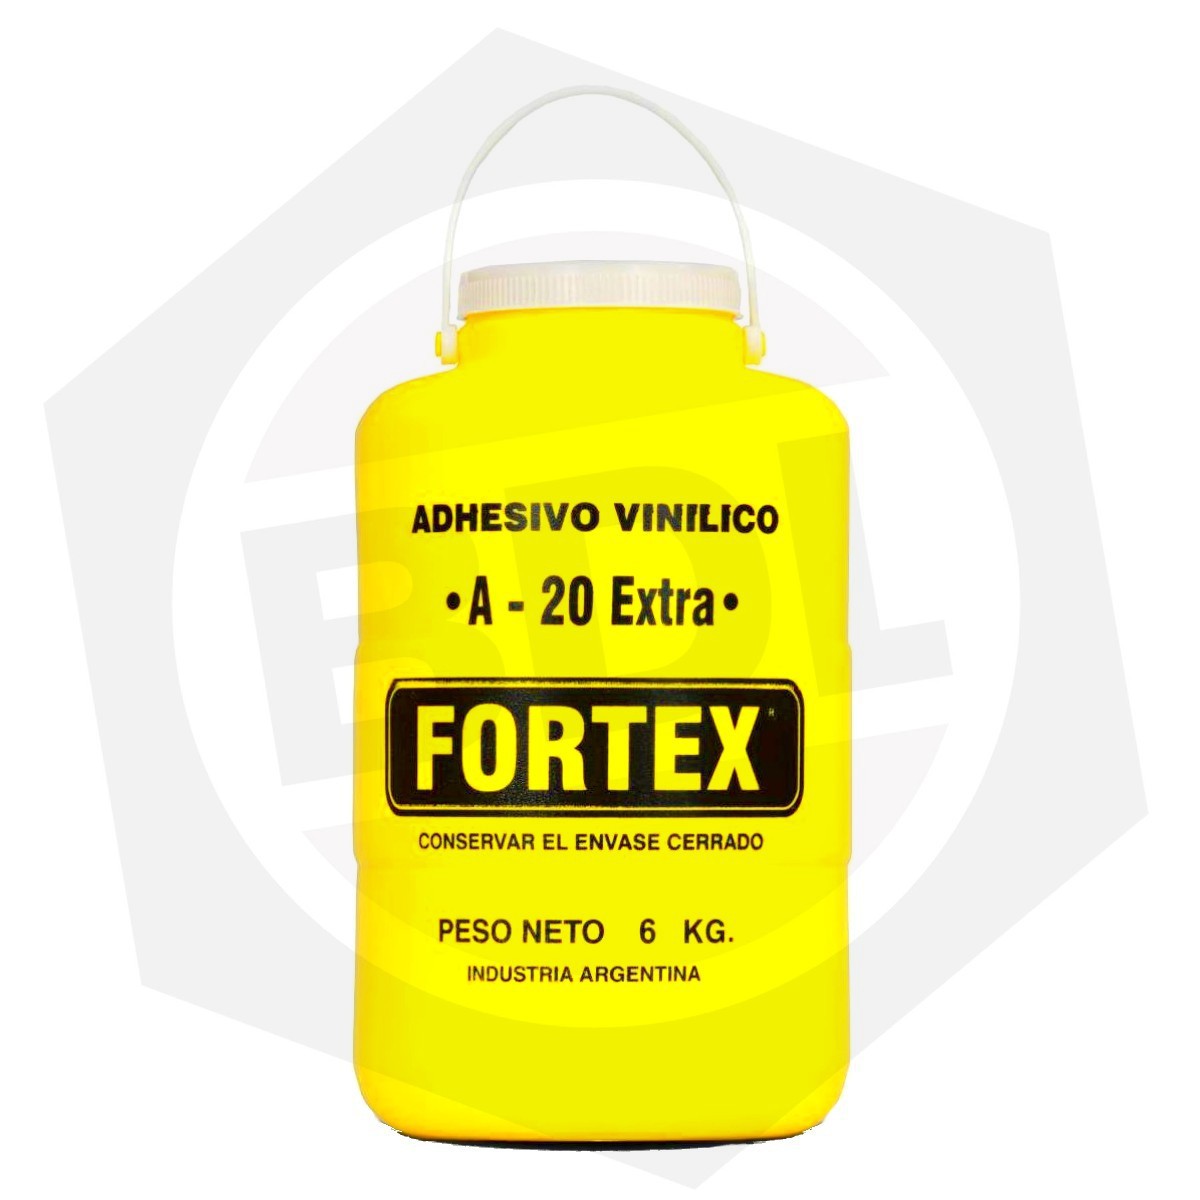 Adhesivo Vinílico FORTEX A-20 Extra - 6 Kg